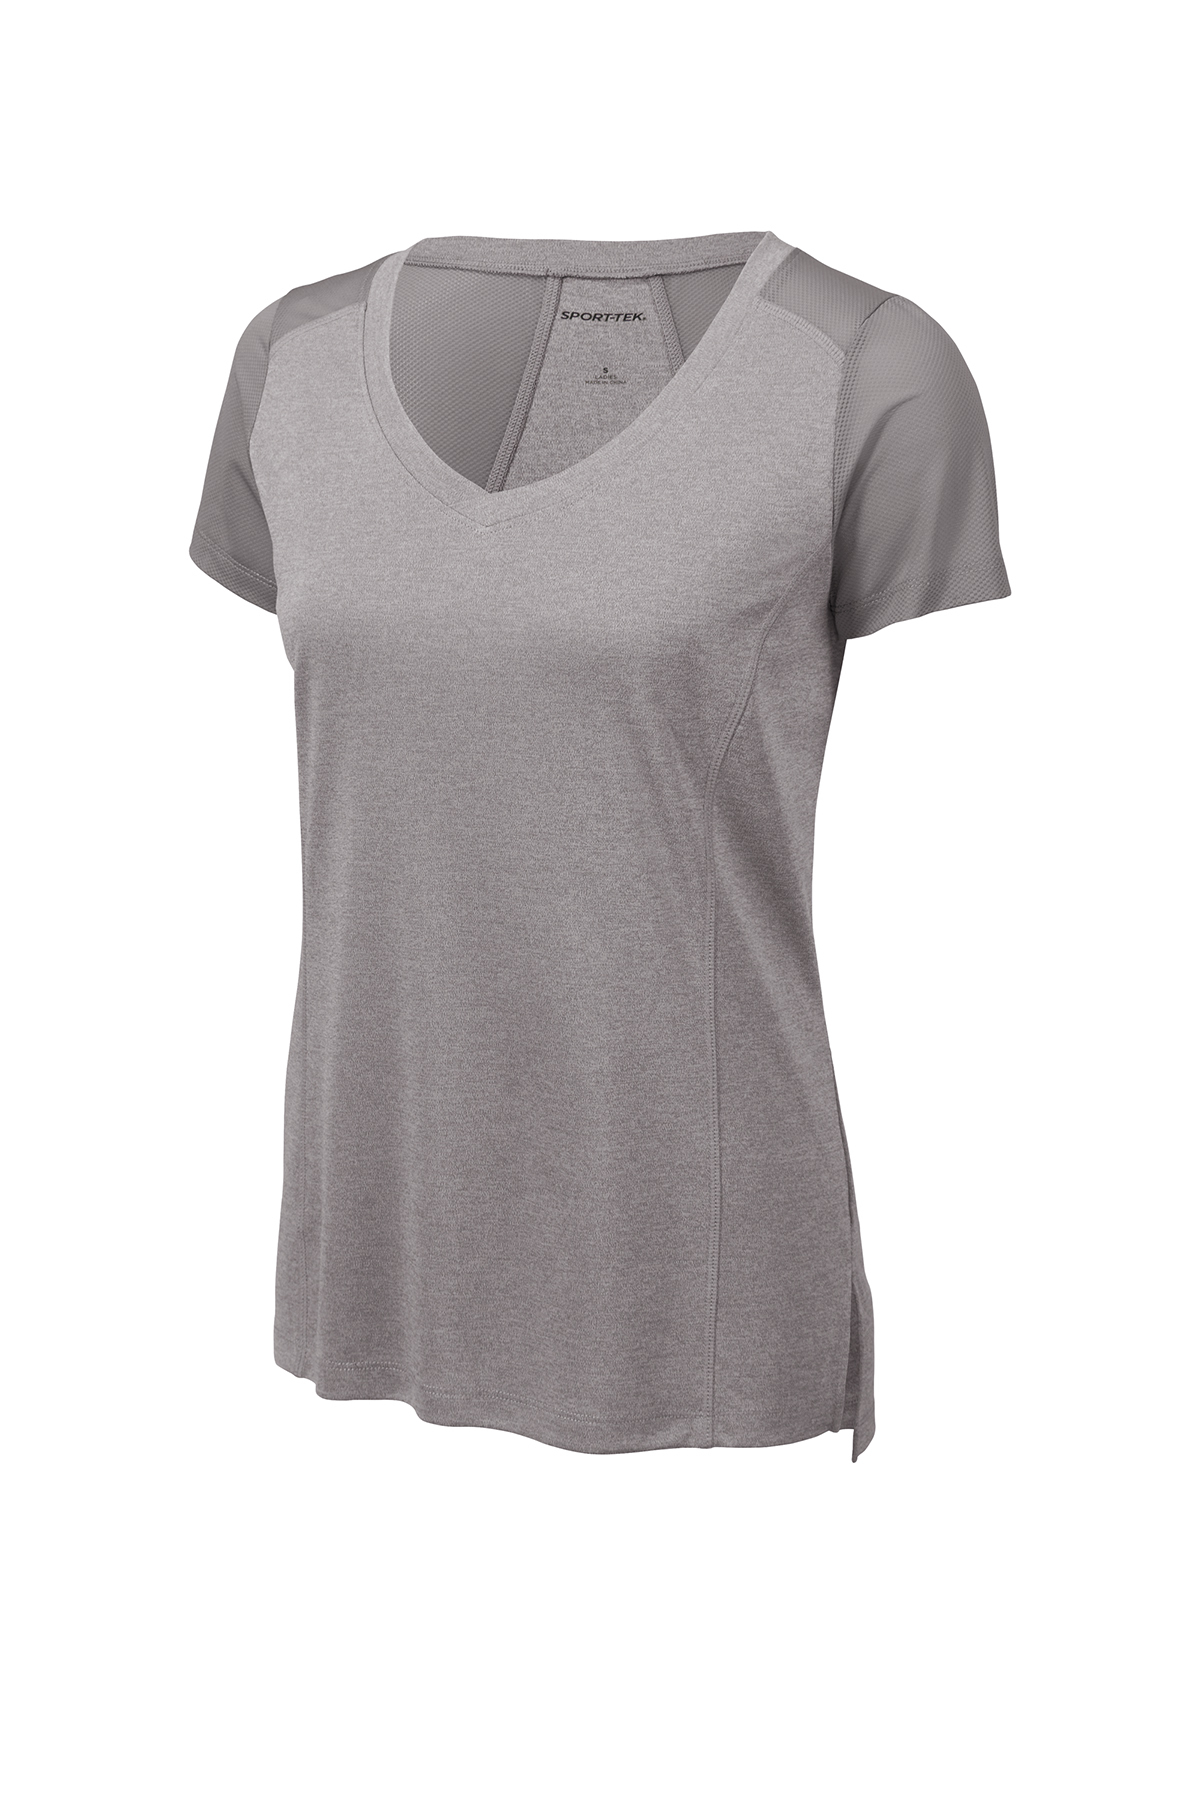 Sport Tek Adult Female Women Plain Short Sleeves T-Shirt Black Medium